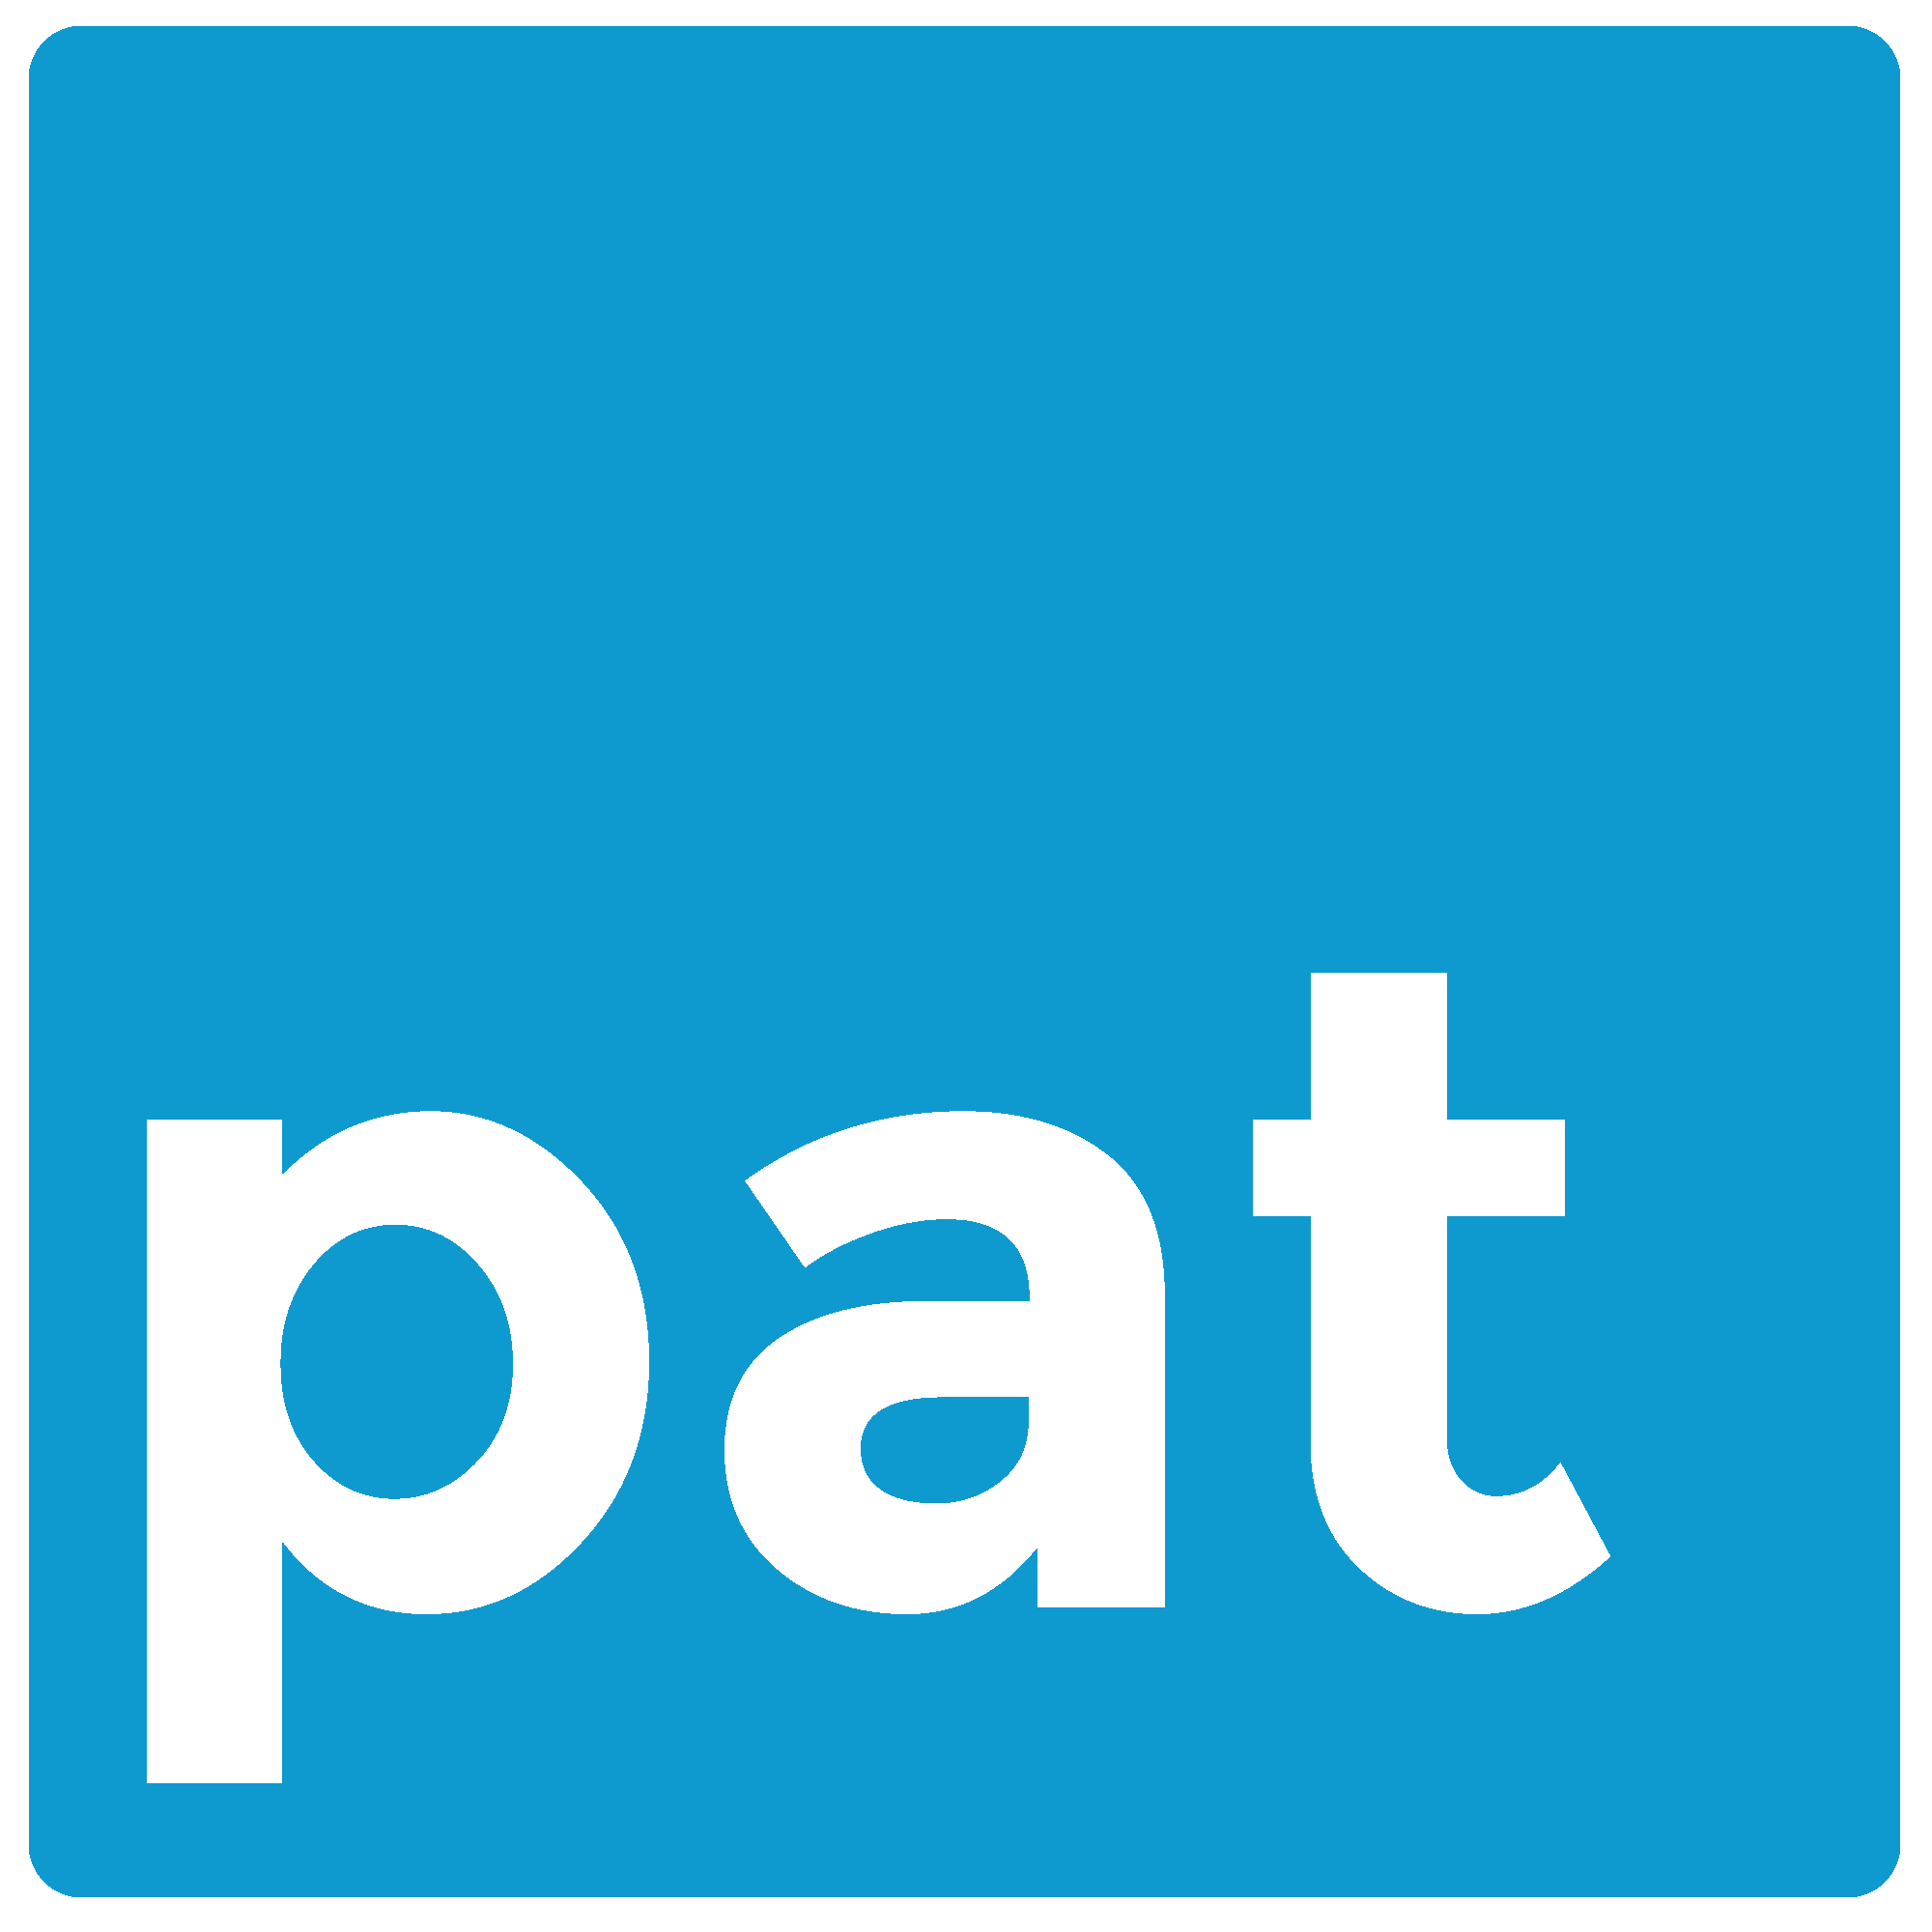 Peabody Access TV logo